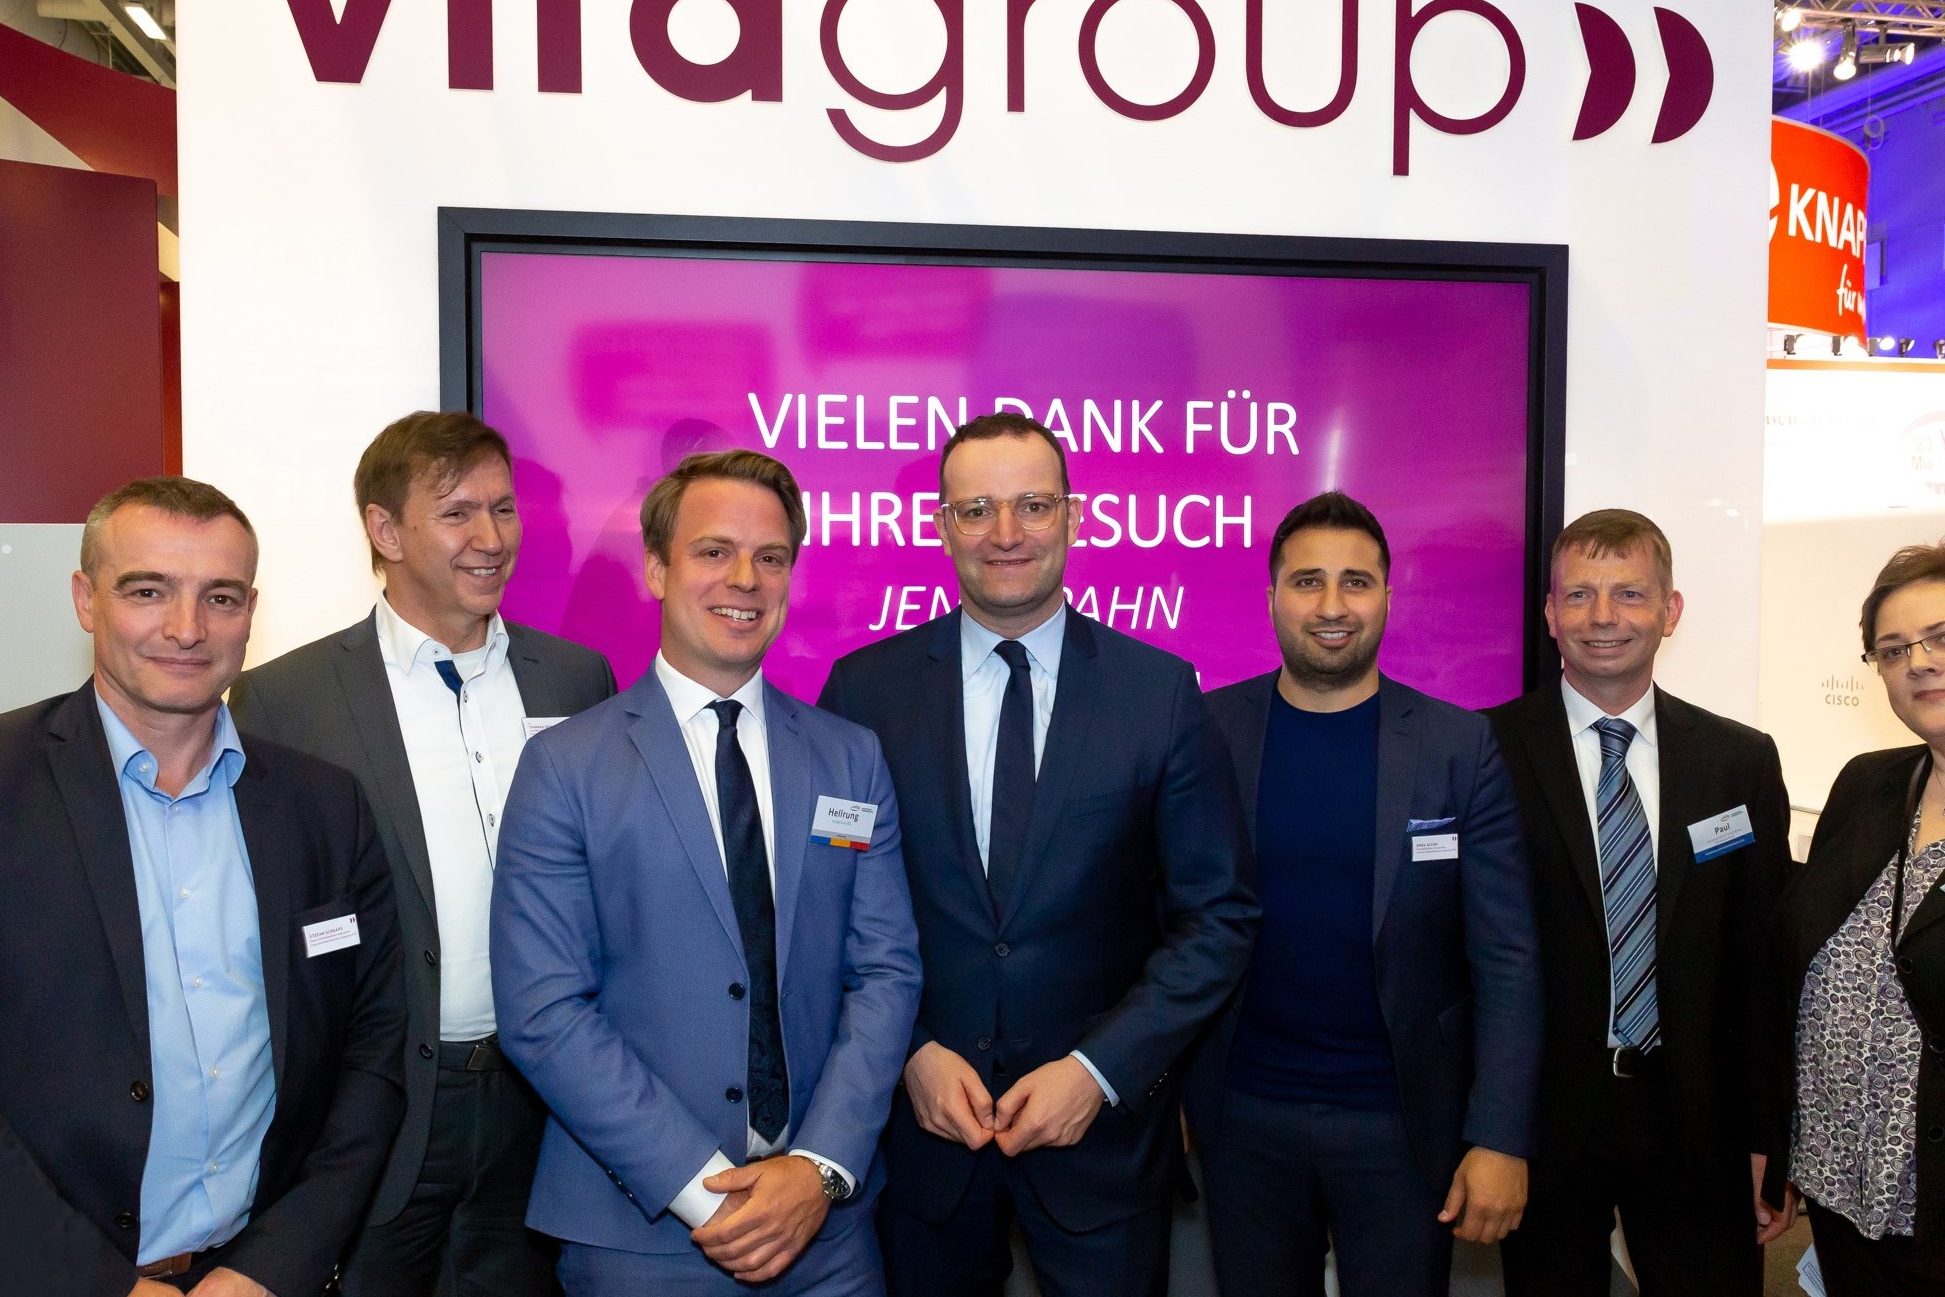 vitagroup auf dem HSK 2019 mit Jens Spahn